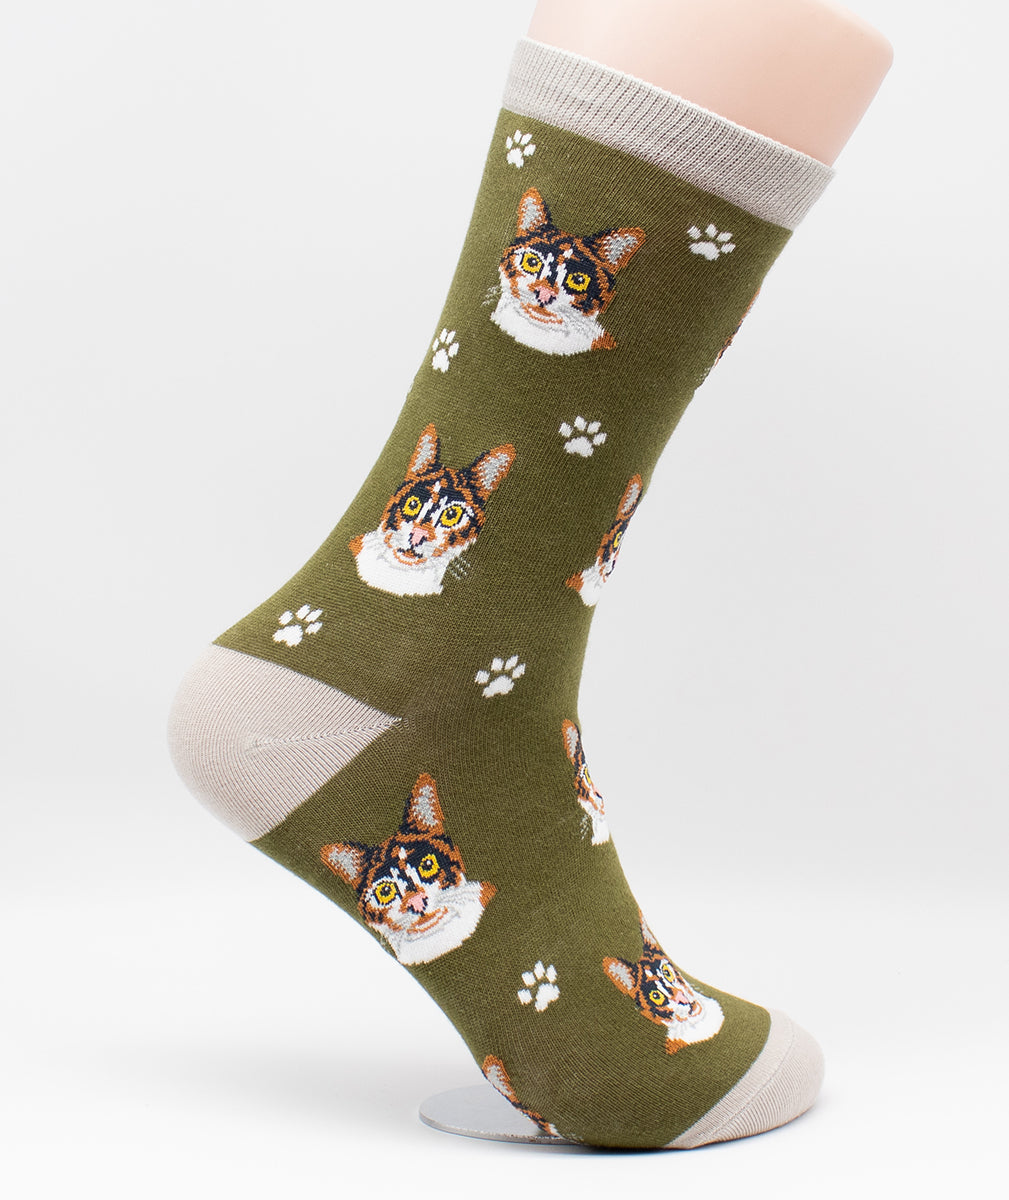 Calico Cat Breed Novelty Socks